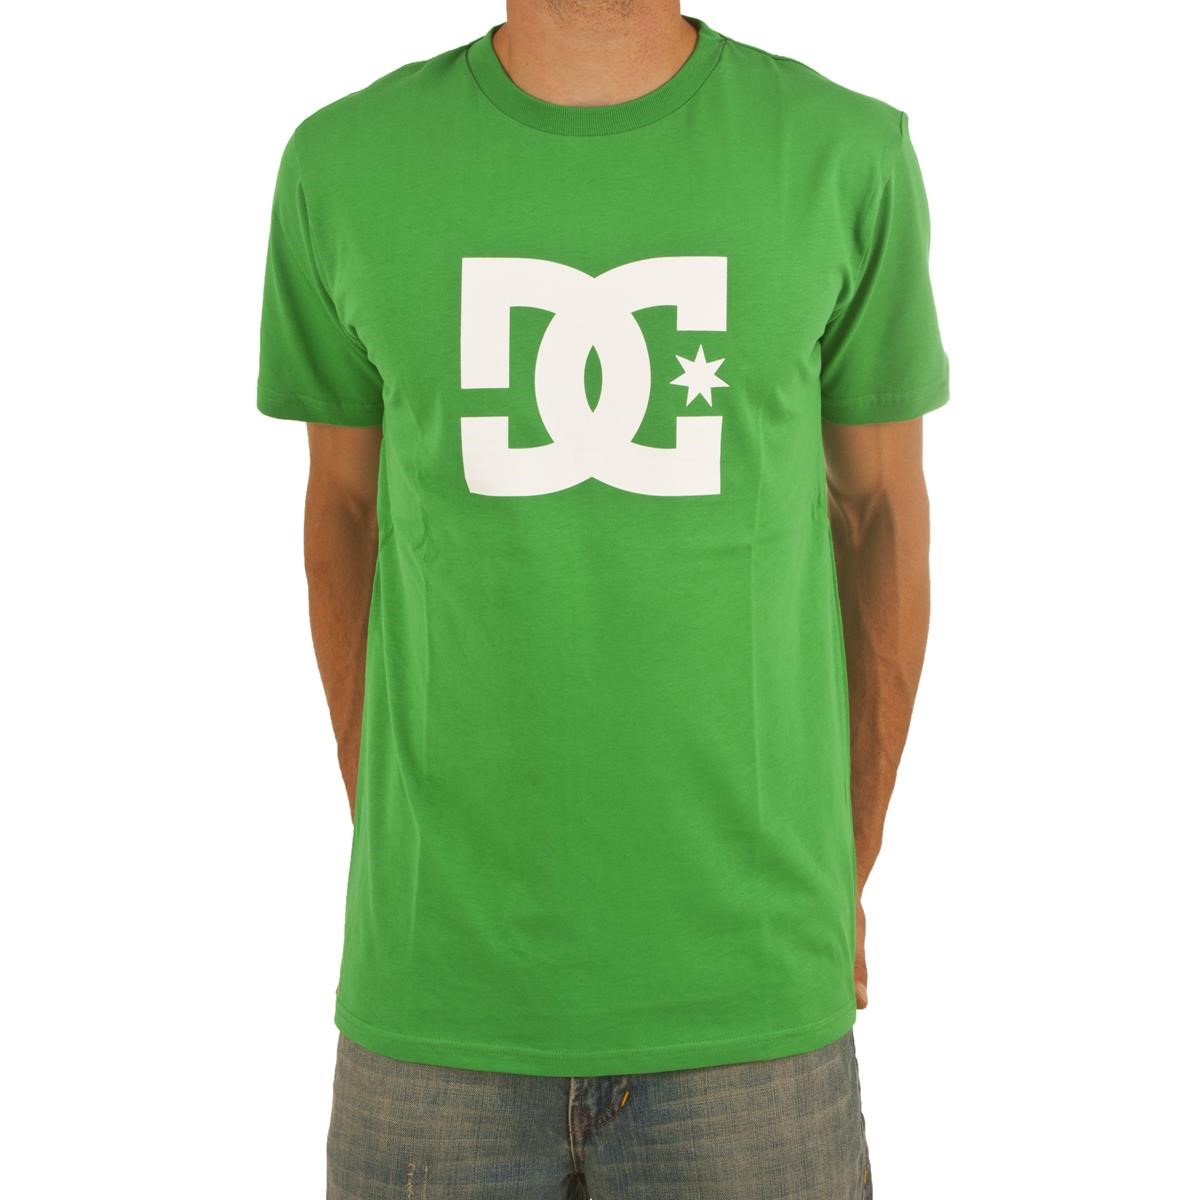 Freizeit/Streetwear Bekleidung-T-Shirts/Polos - DC T-Shirt Star Celtic Green